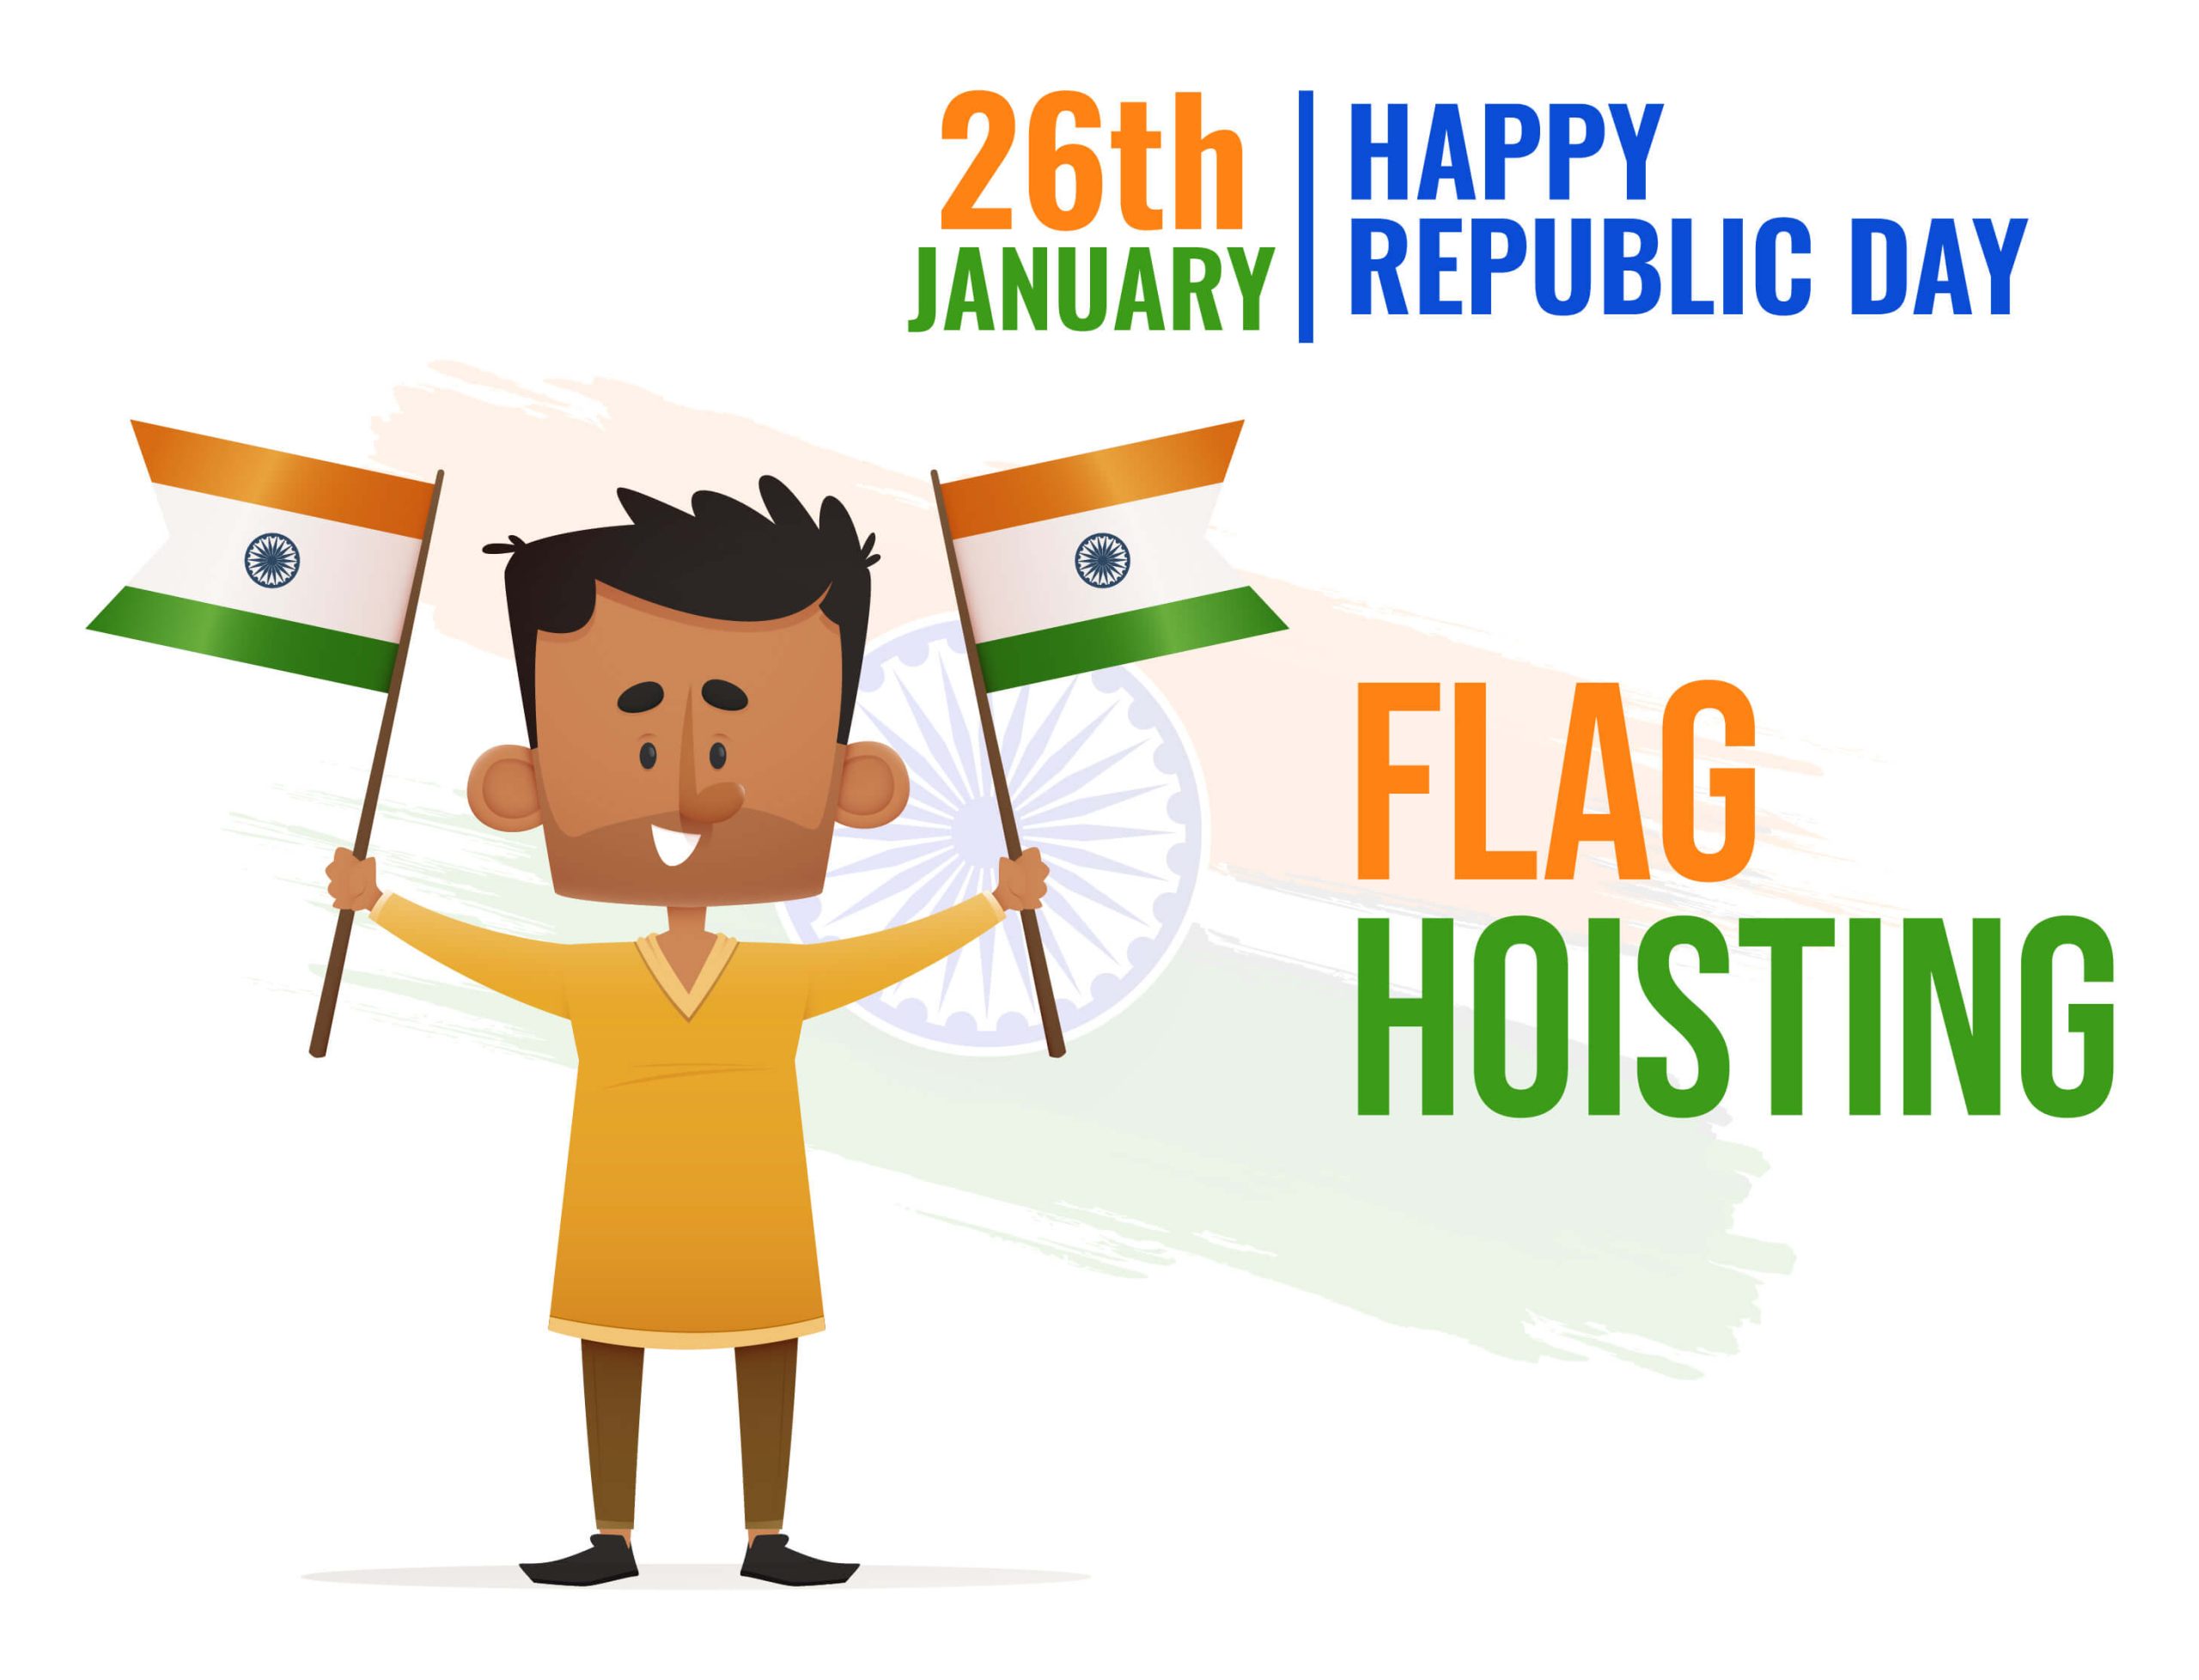 India Republic Day Flag hoisting